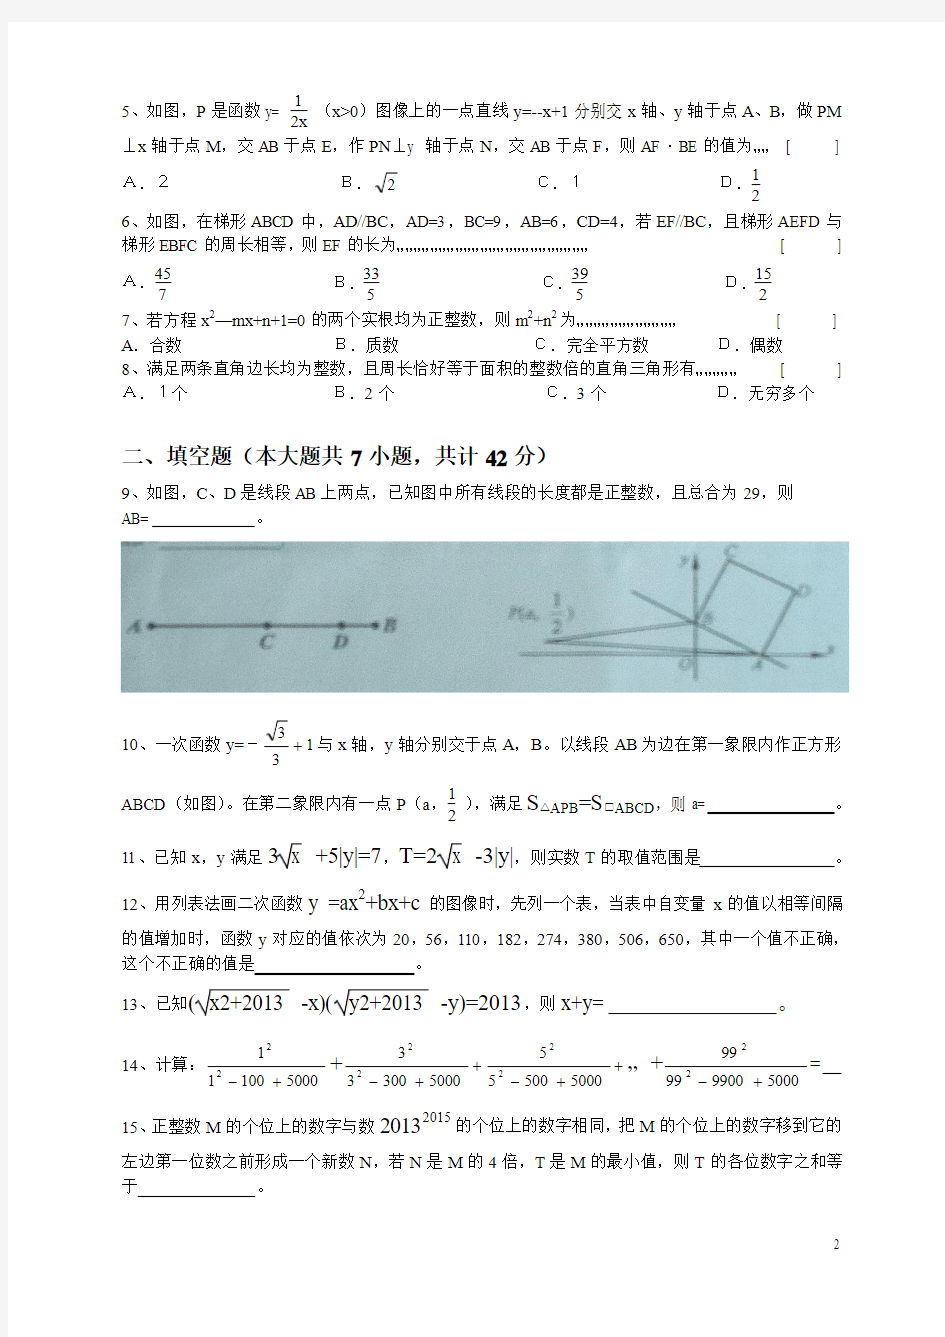 蚌埠市成功杯2013初中数学邀请赛